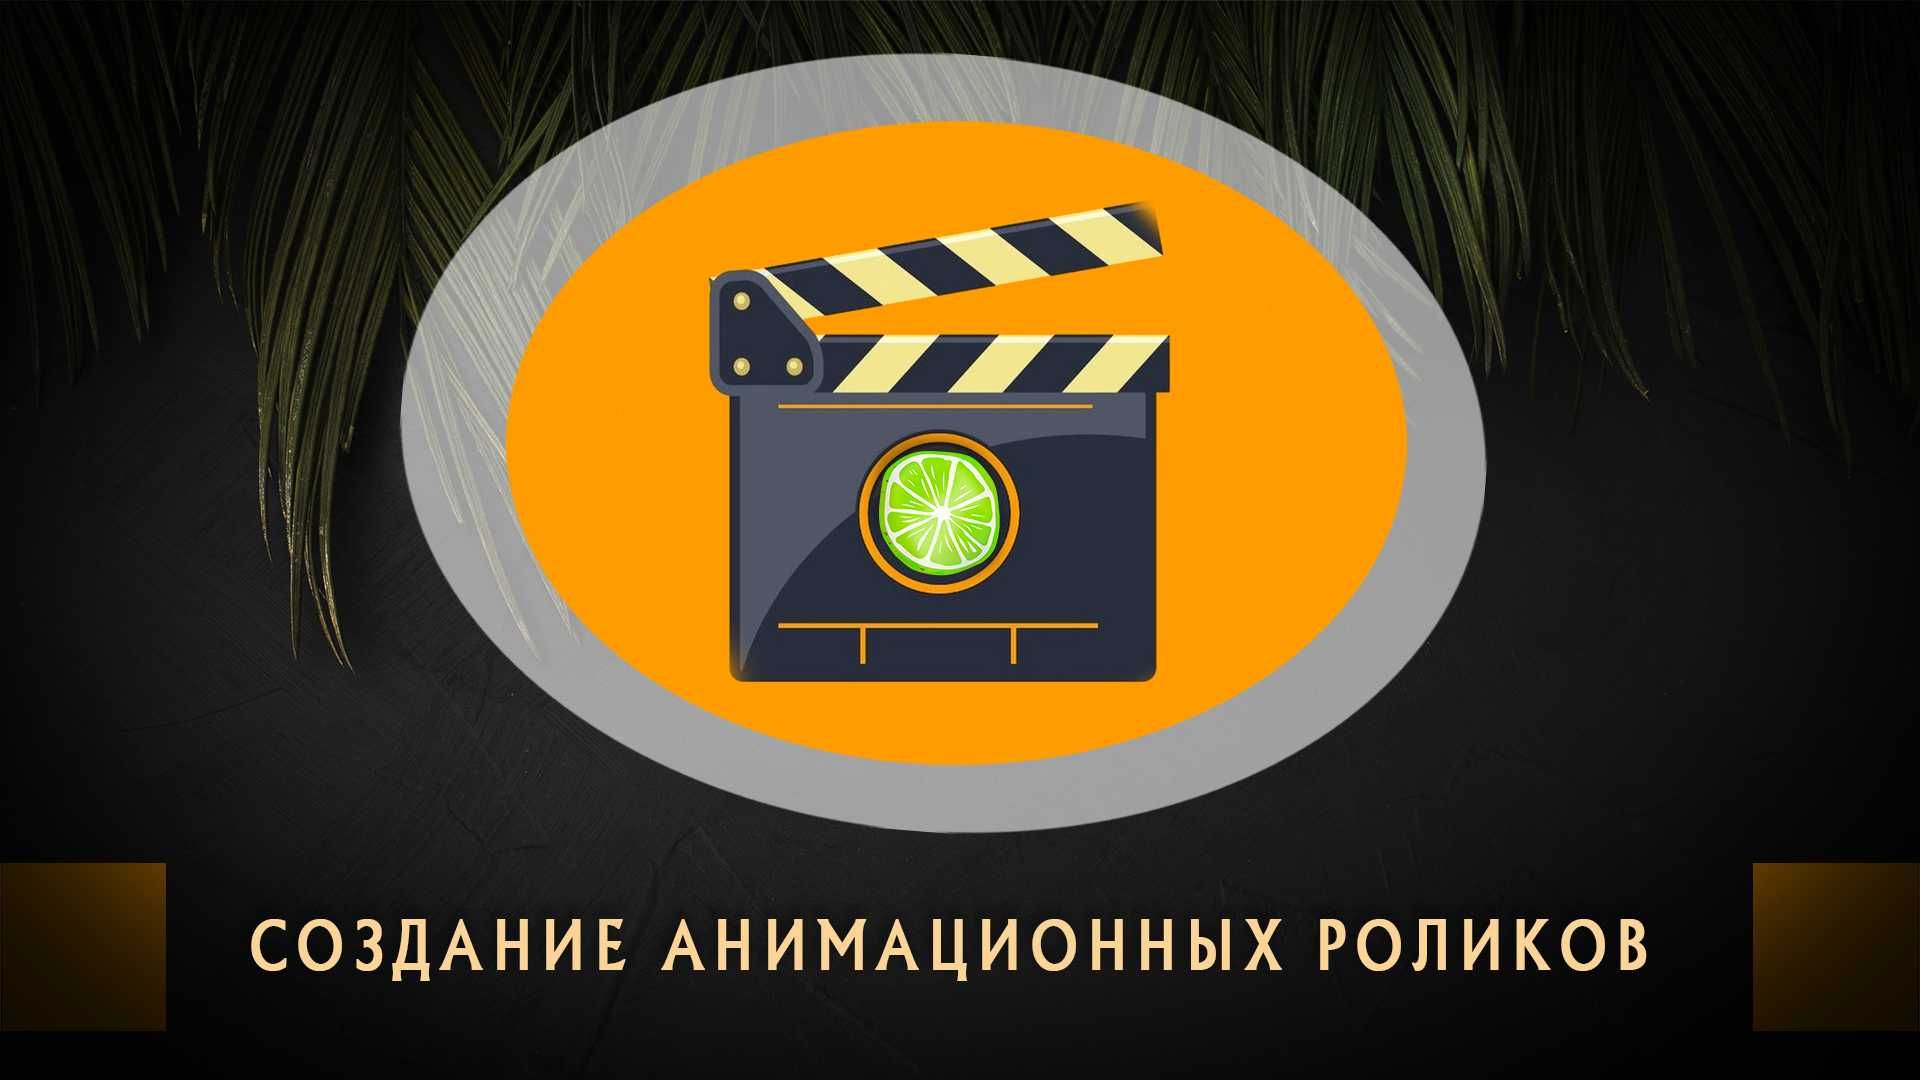 Профессиональная фото и видео съемка рекламных роликов в Ташкенте.